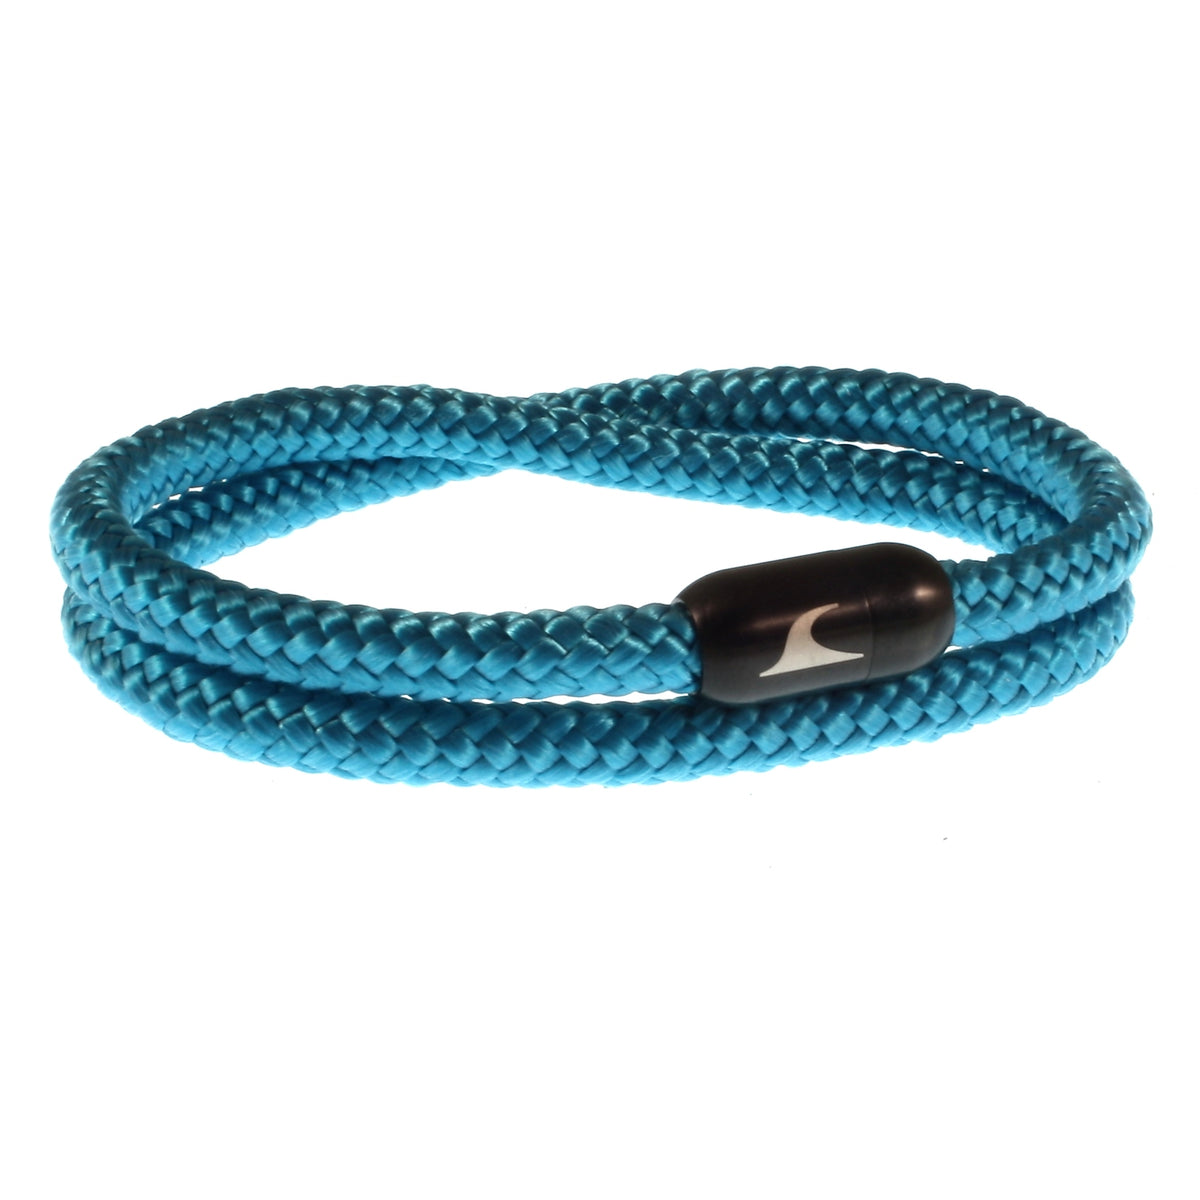 Herren-Segeltau-Armband-damen-hawaii-blau-schwarz-Edelstahlverschluss-vorn-wavepirate-shop-st